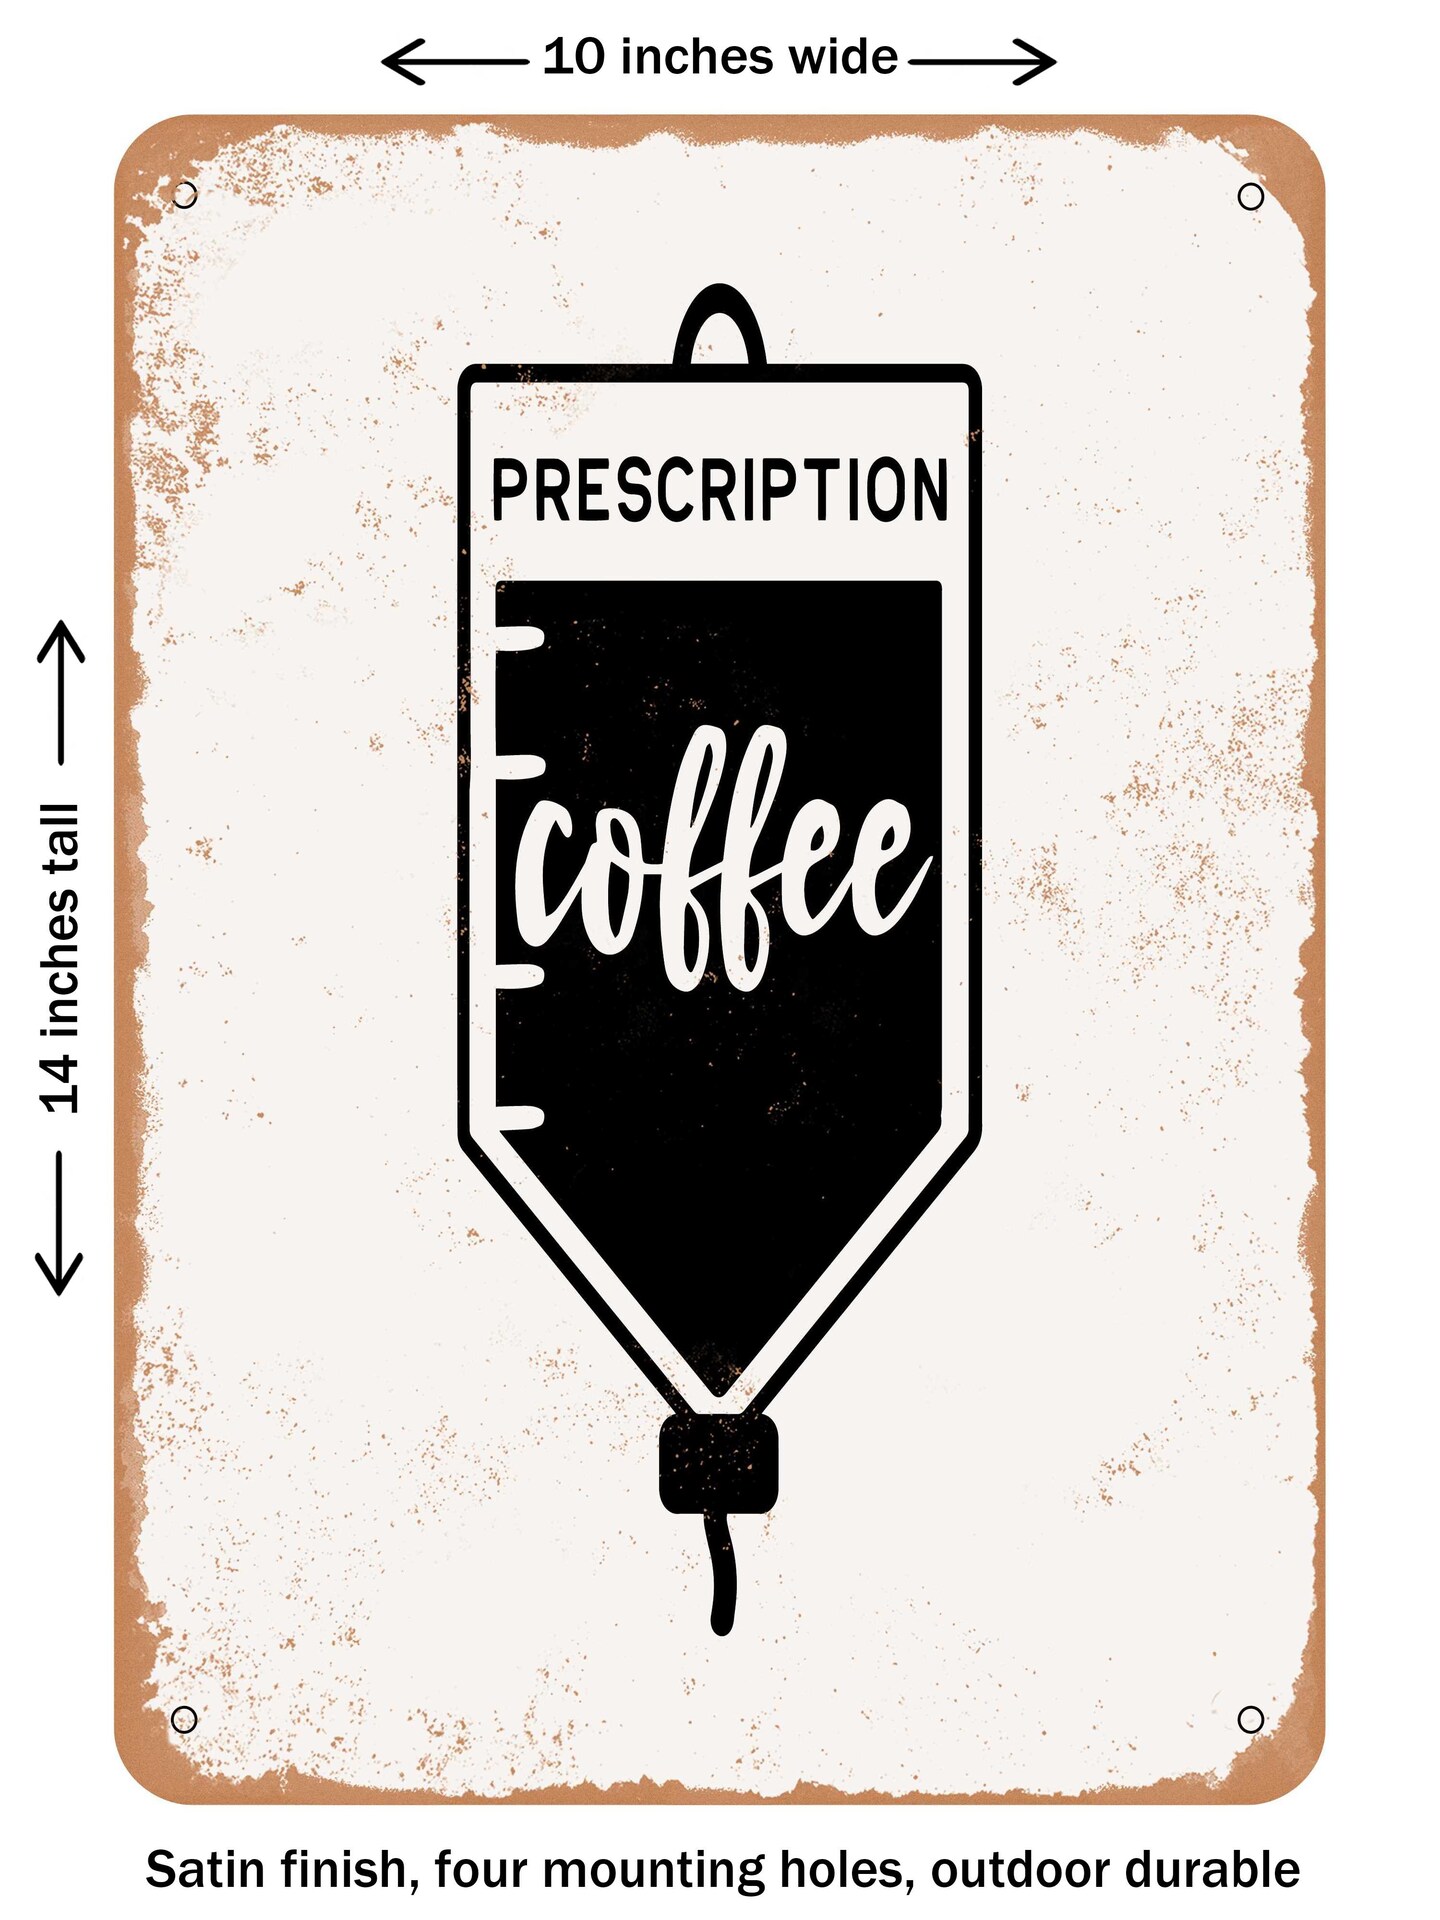 DECORATIVE METAL SIGN - Prescription Coffee - 2  - Vintage Rusty Look